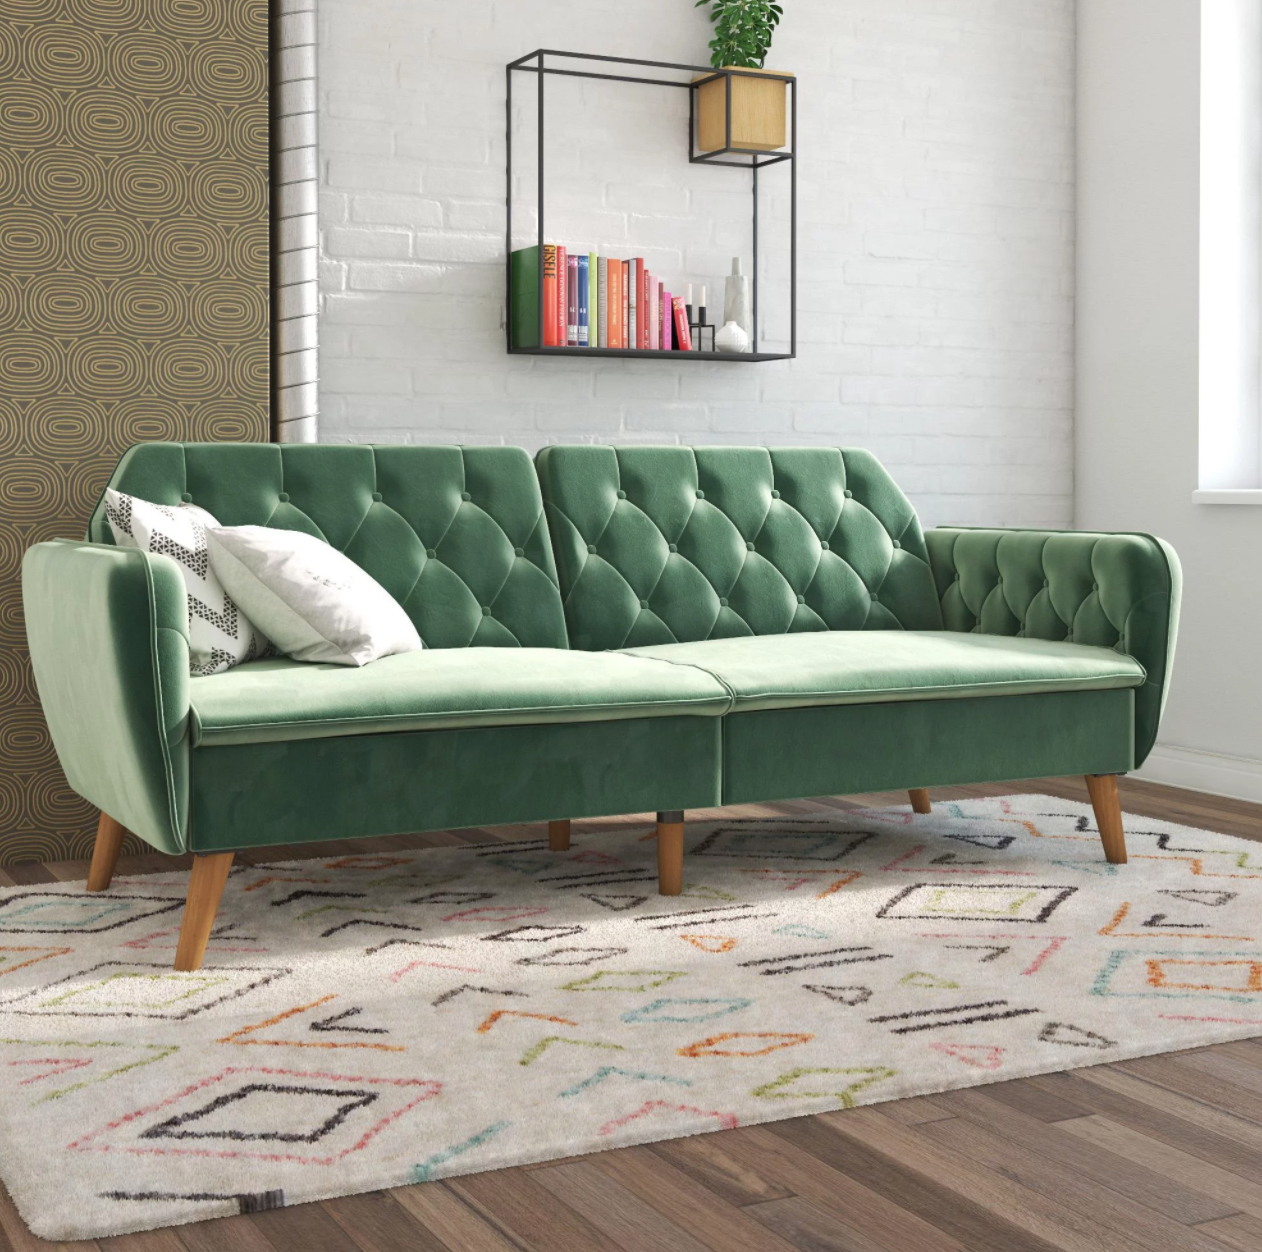 Green velvet sofa bed